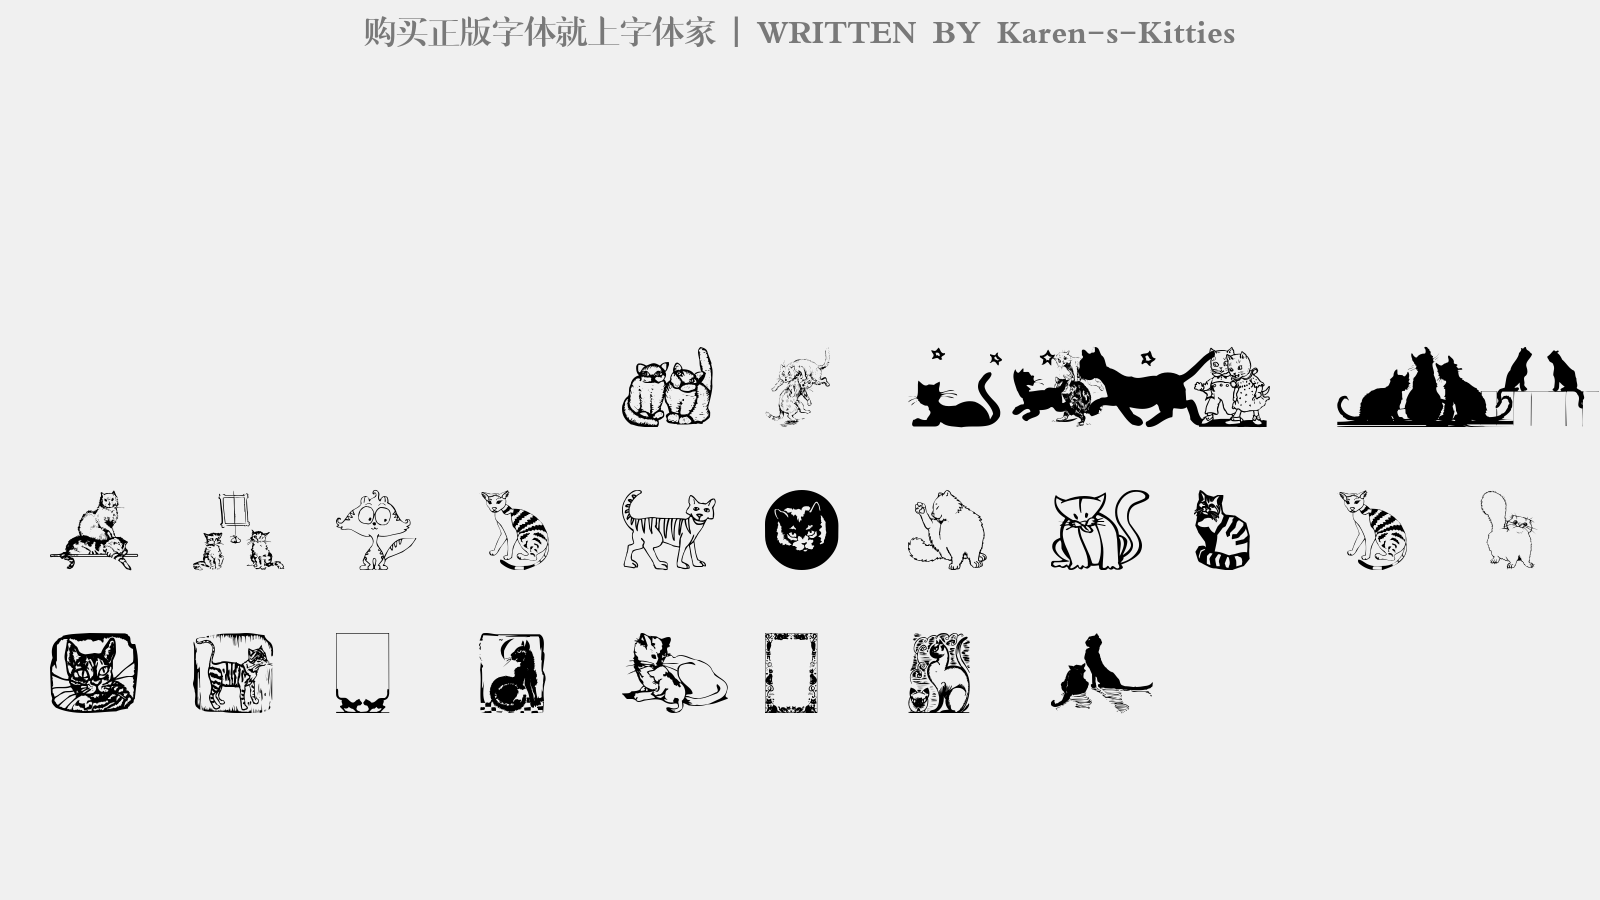 Karen-s-Kitties - 大写字母/小写字母/数字